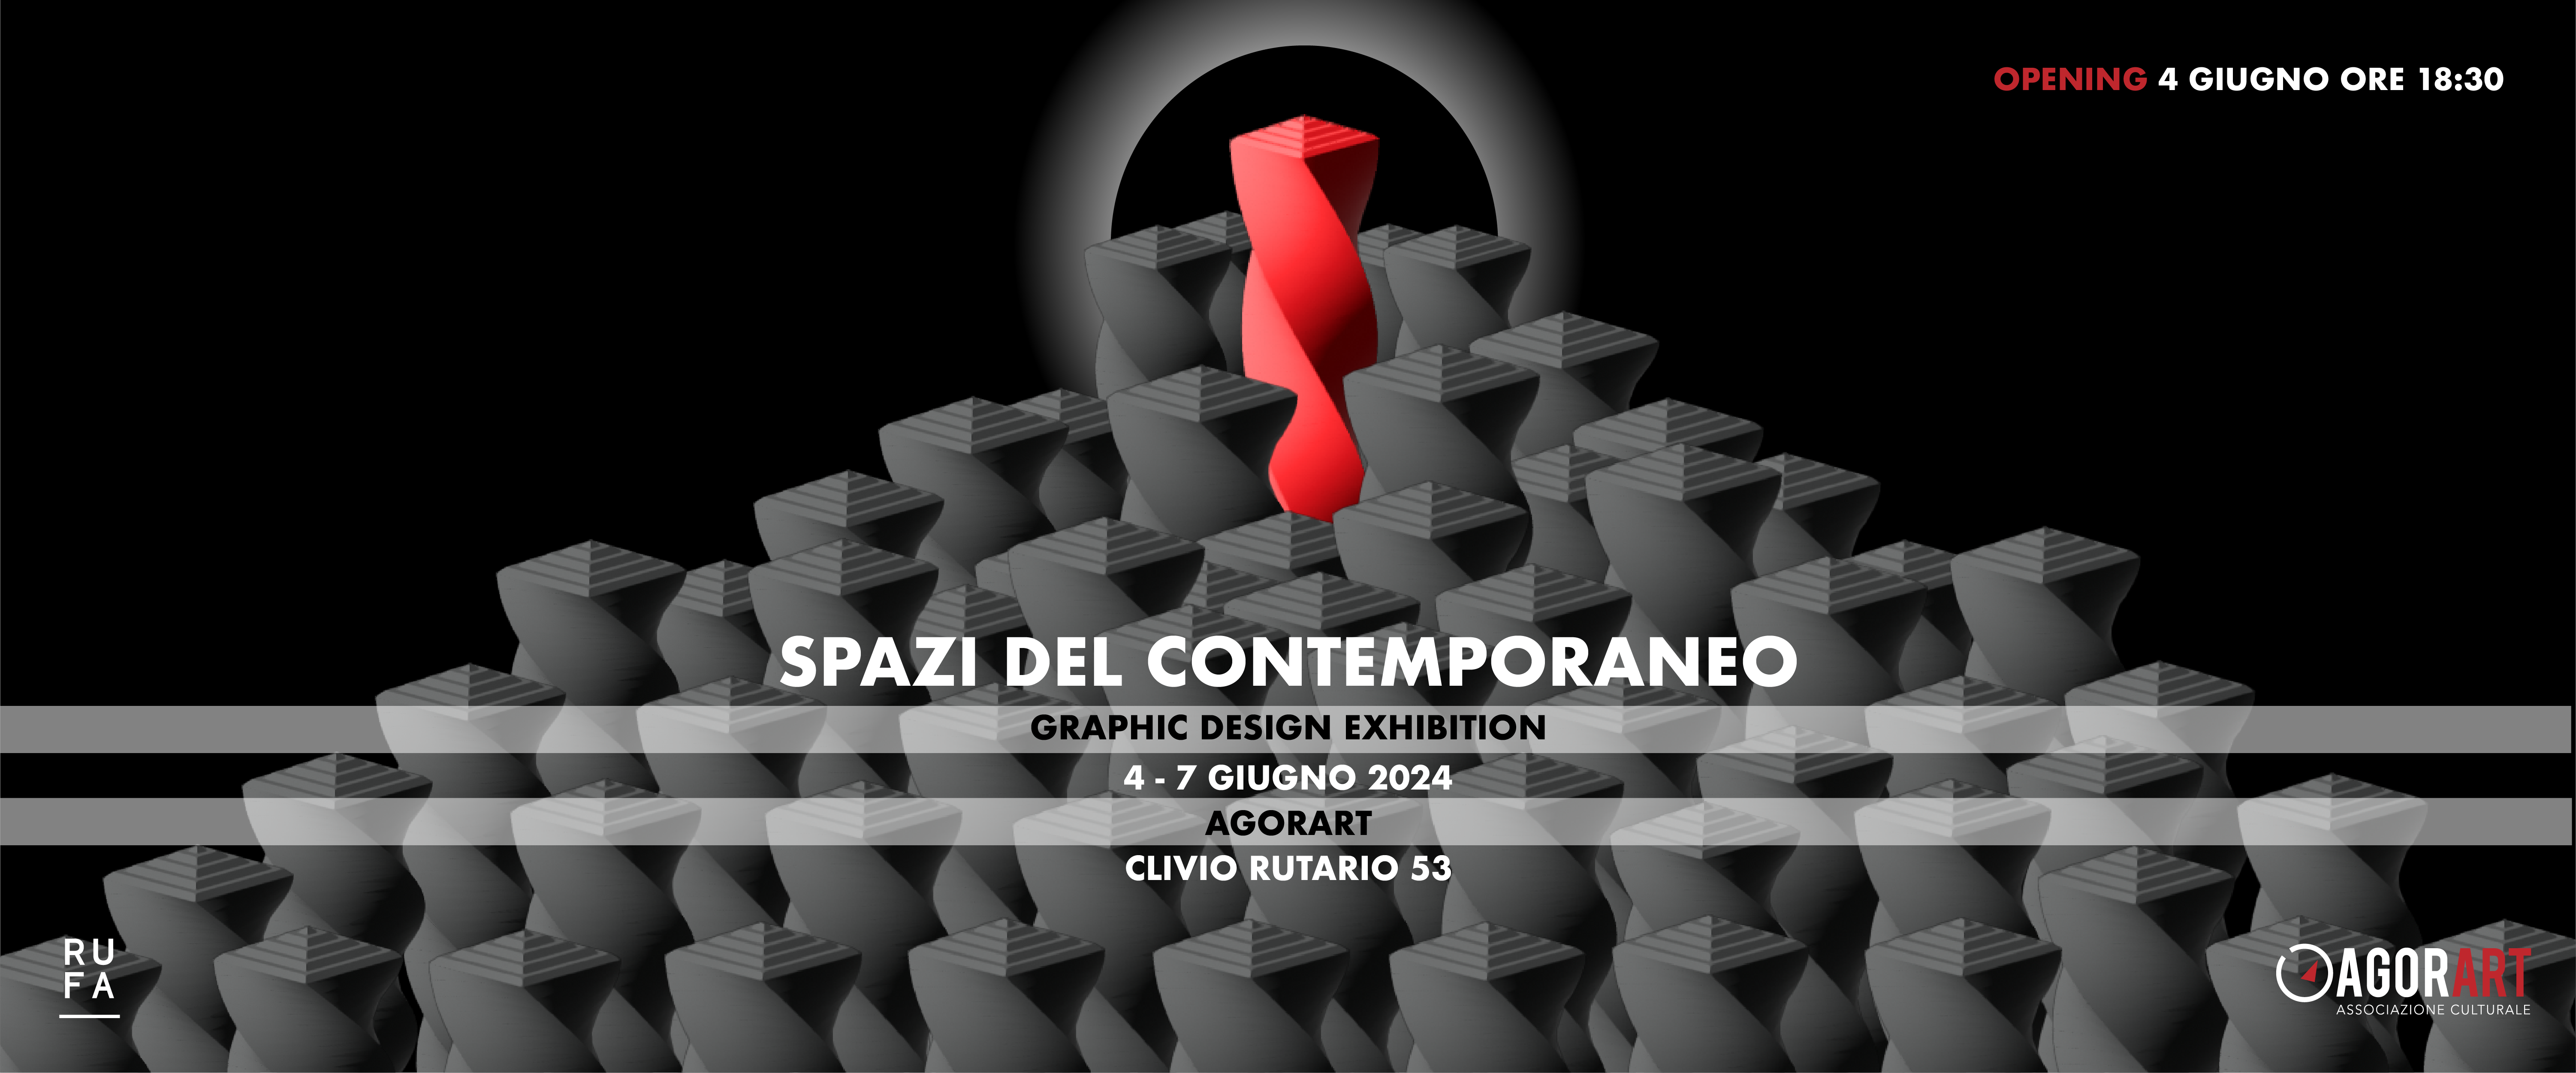 SPAZI DEL CONTEMPORANEO - Graphic Design Exhibition